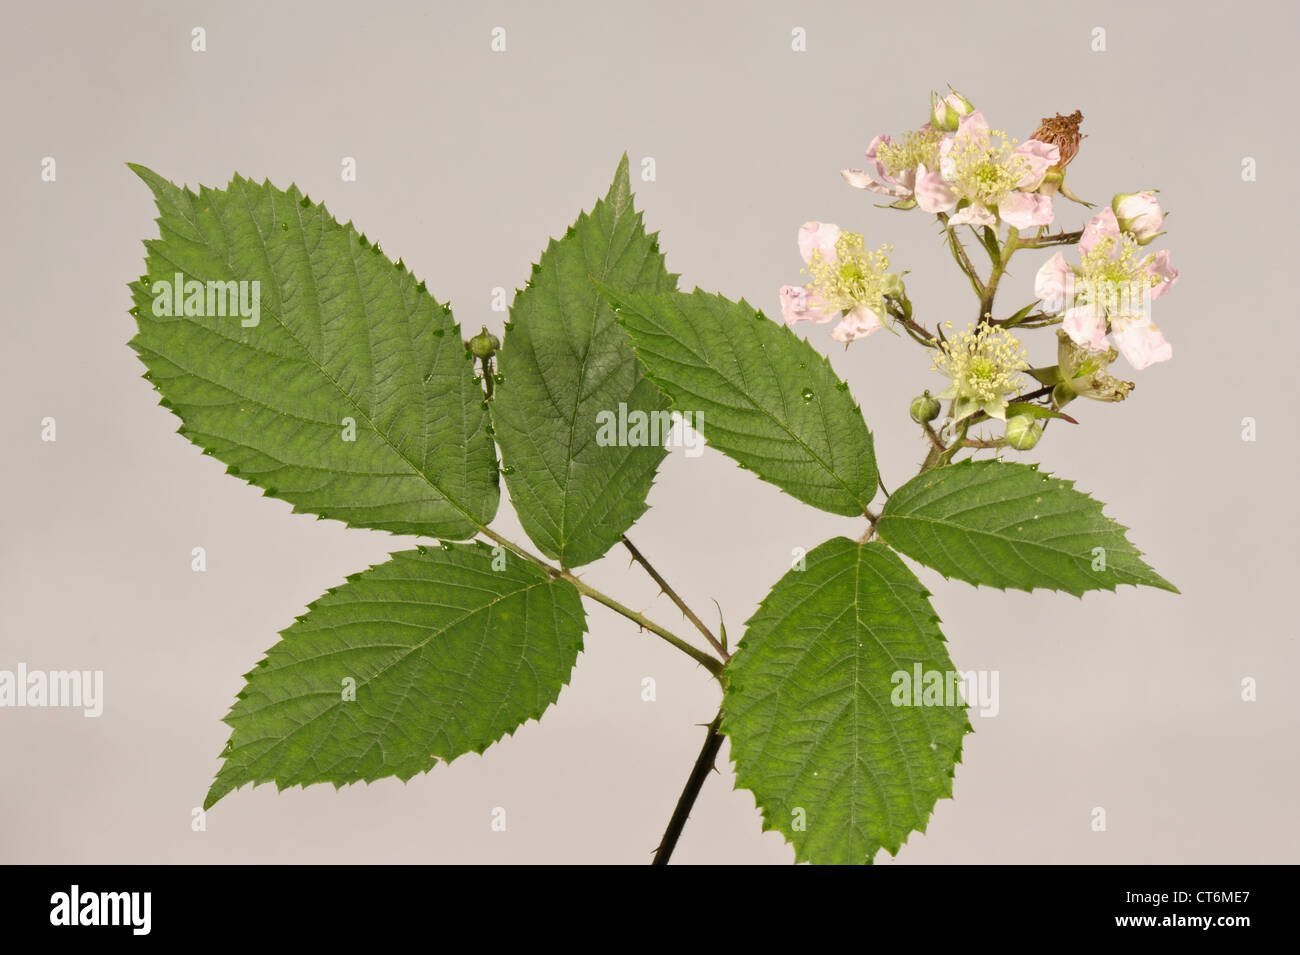 BlackBerry oder Brombeere Rubus Fruticosus Blätter und Blüten Stockfoto